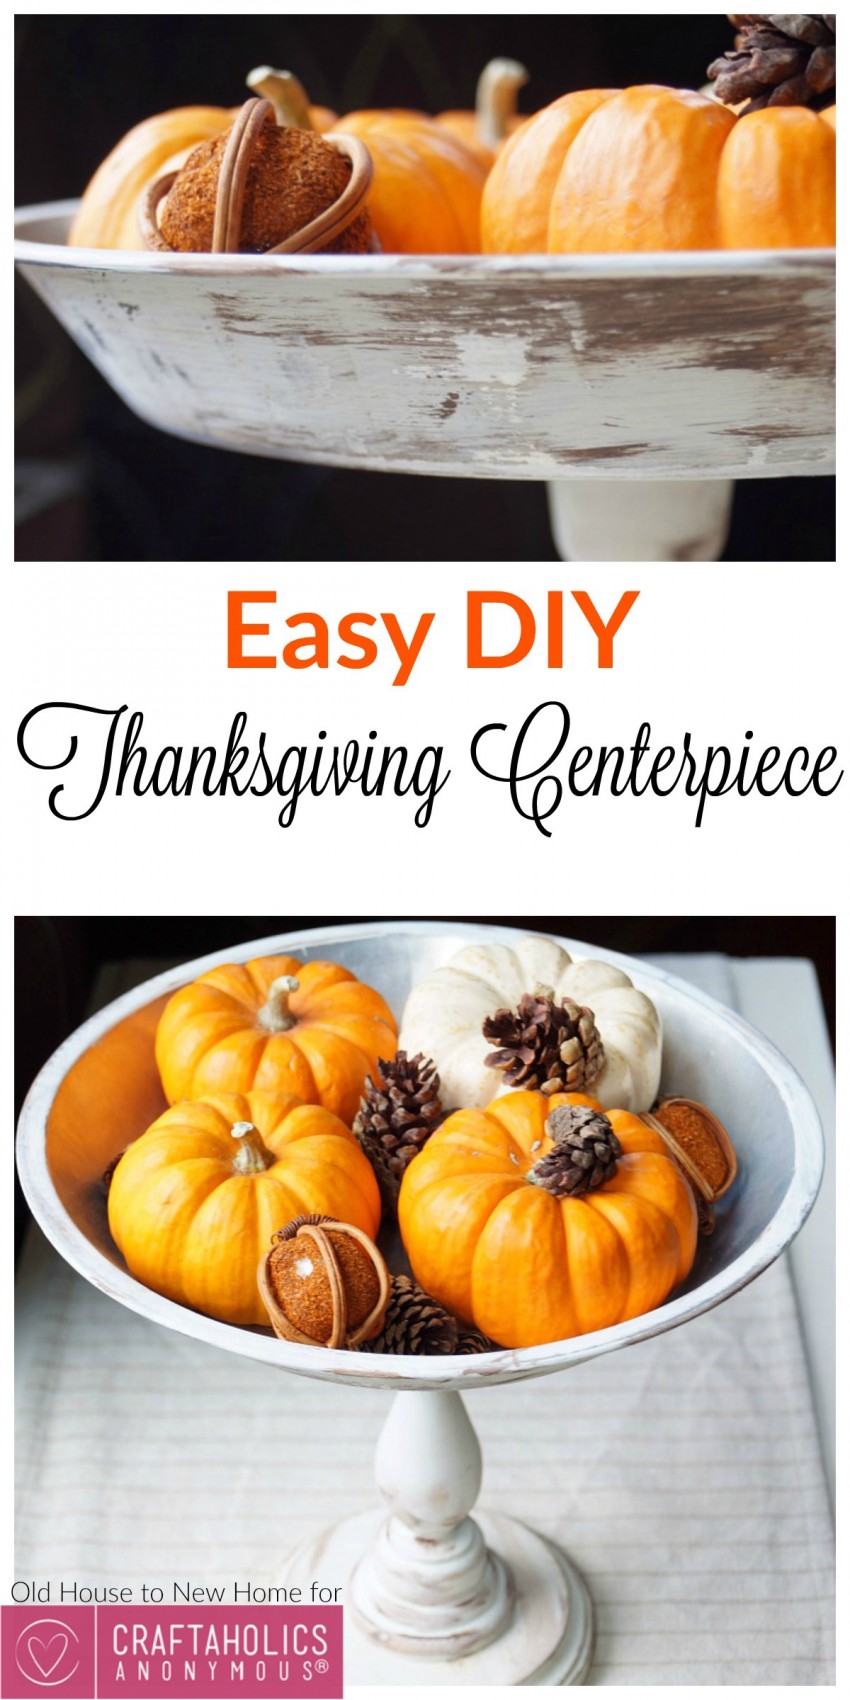 Easy DIY Thanksgiving Centerpiece